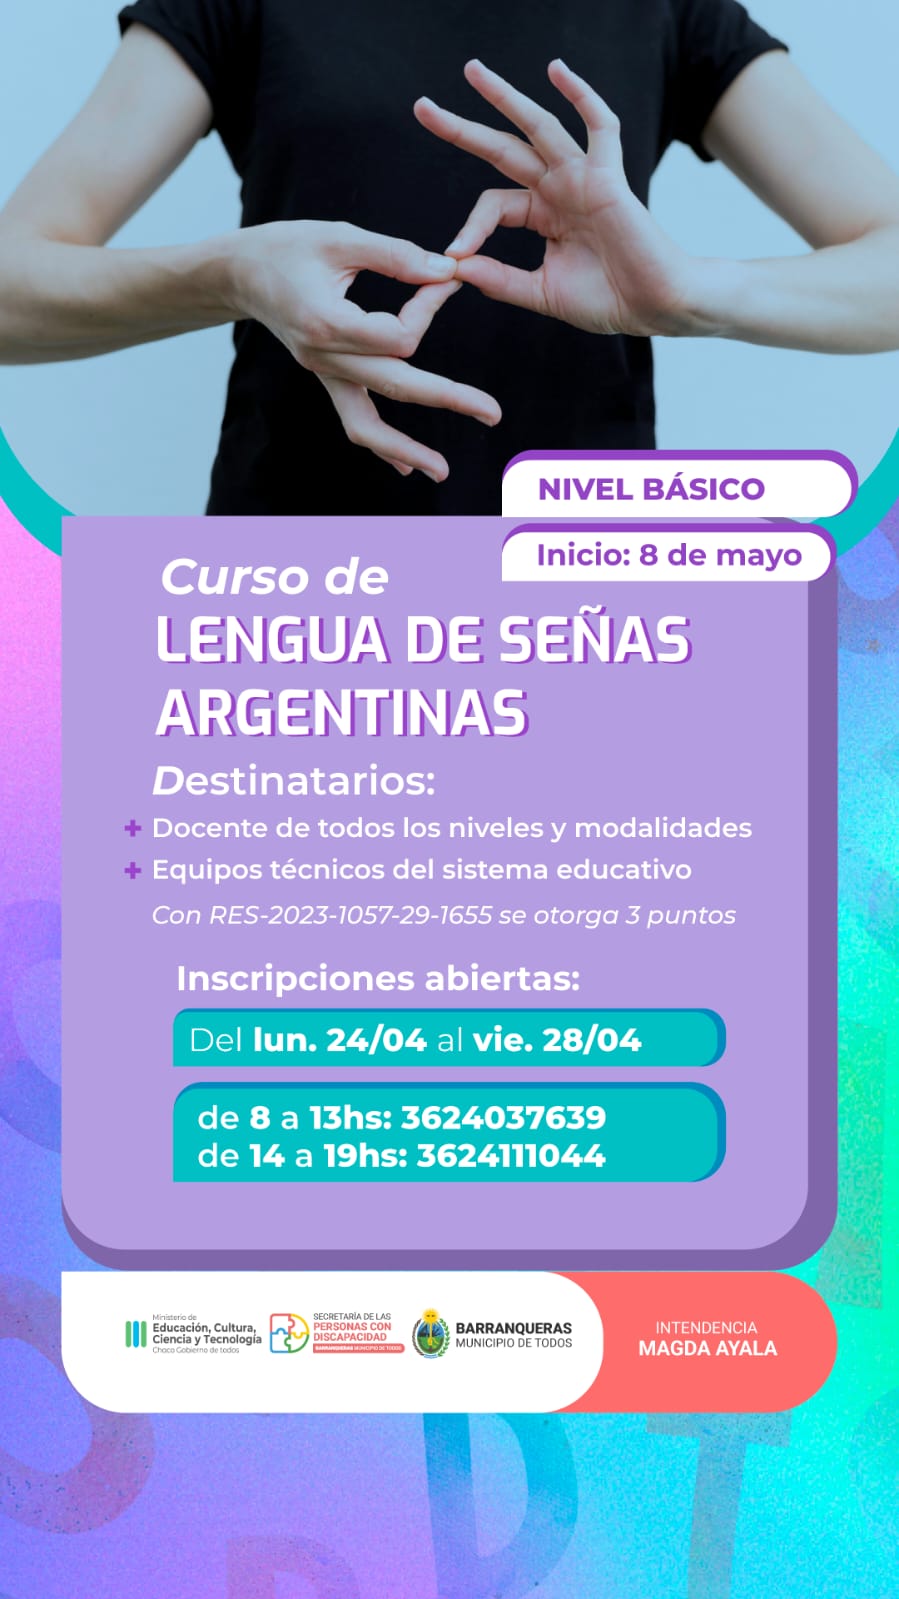 Barranqueras: Se encuentran abiertas las inscripciones al nuevo curso de Lengua de Señas Argentinas